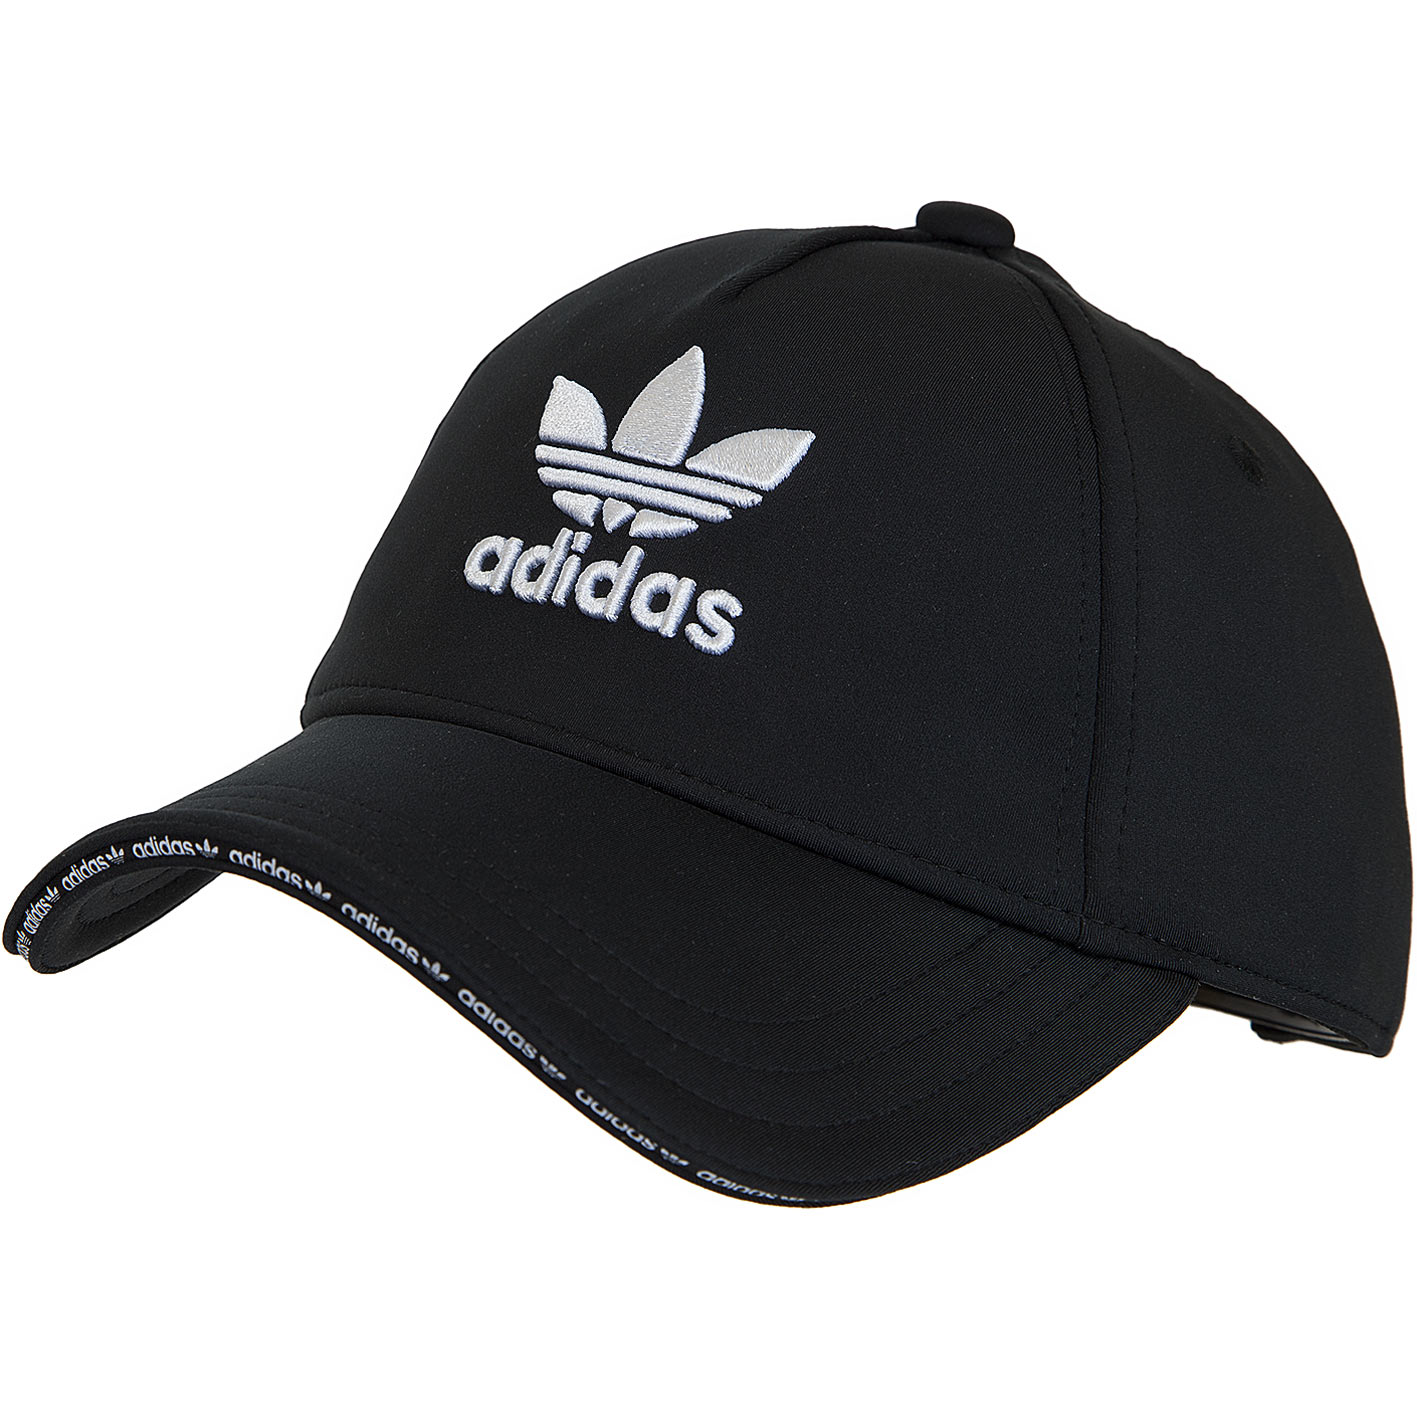 ☆ Adidas Originals Snapback Cap schwarz/weiß - hier bestellen!